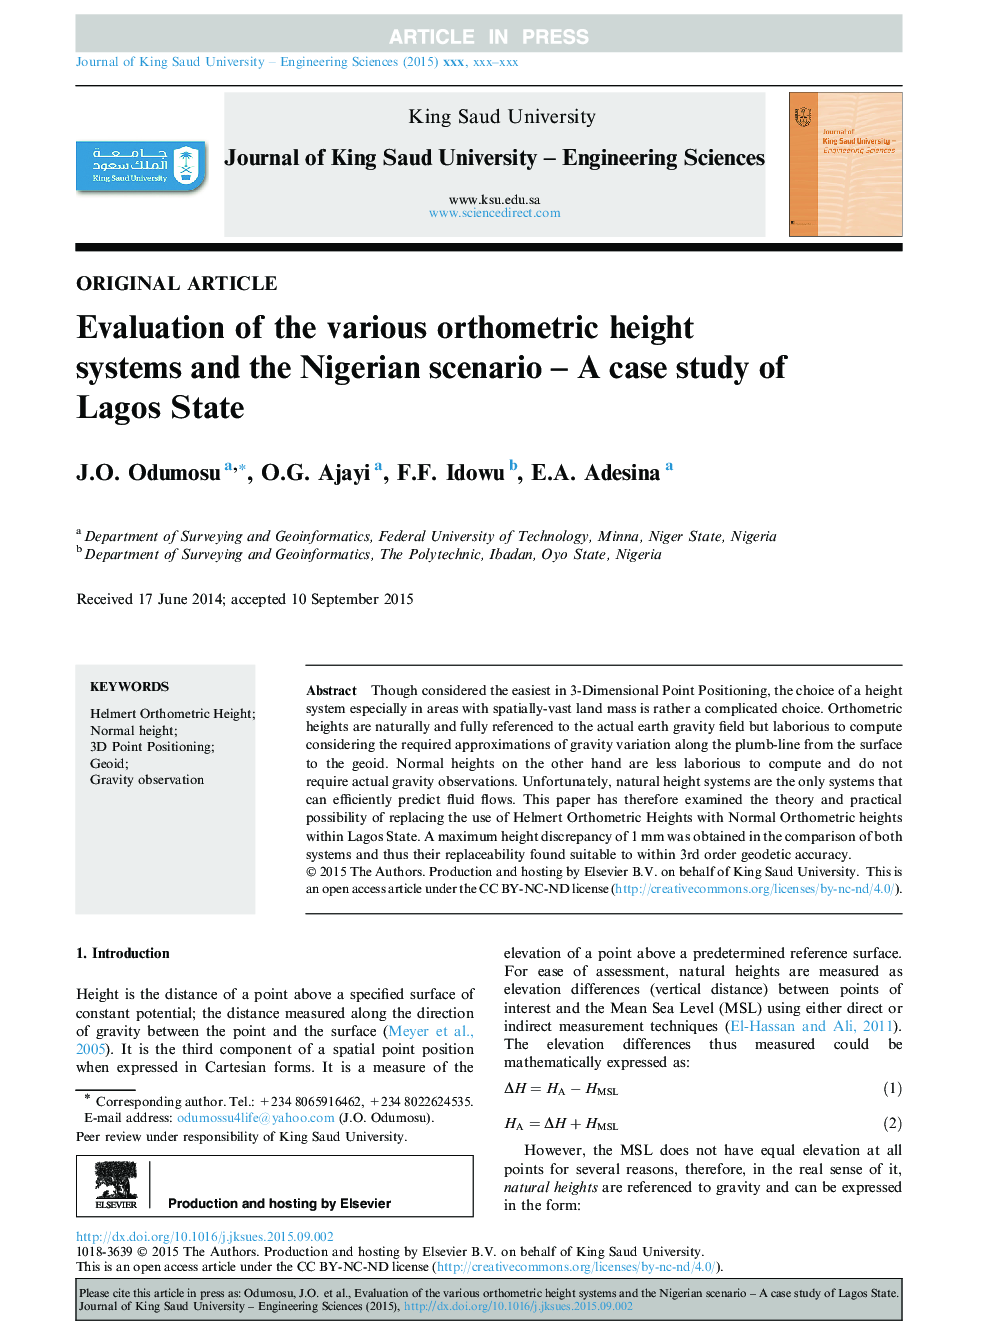 ارزیابی سیستم های ارتفاع سنج مختلف و سناریوی نیجریه - مطالعه موردی دولت لاگوس 